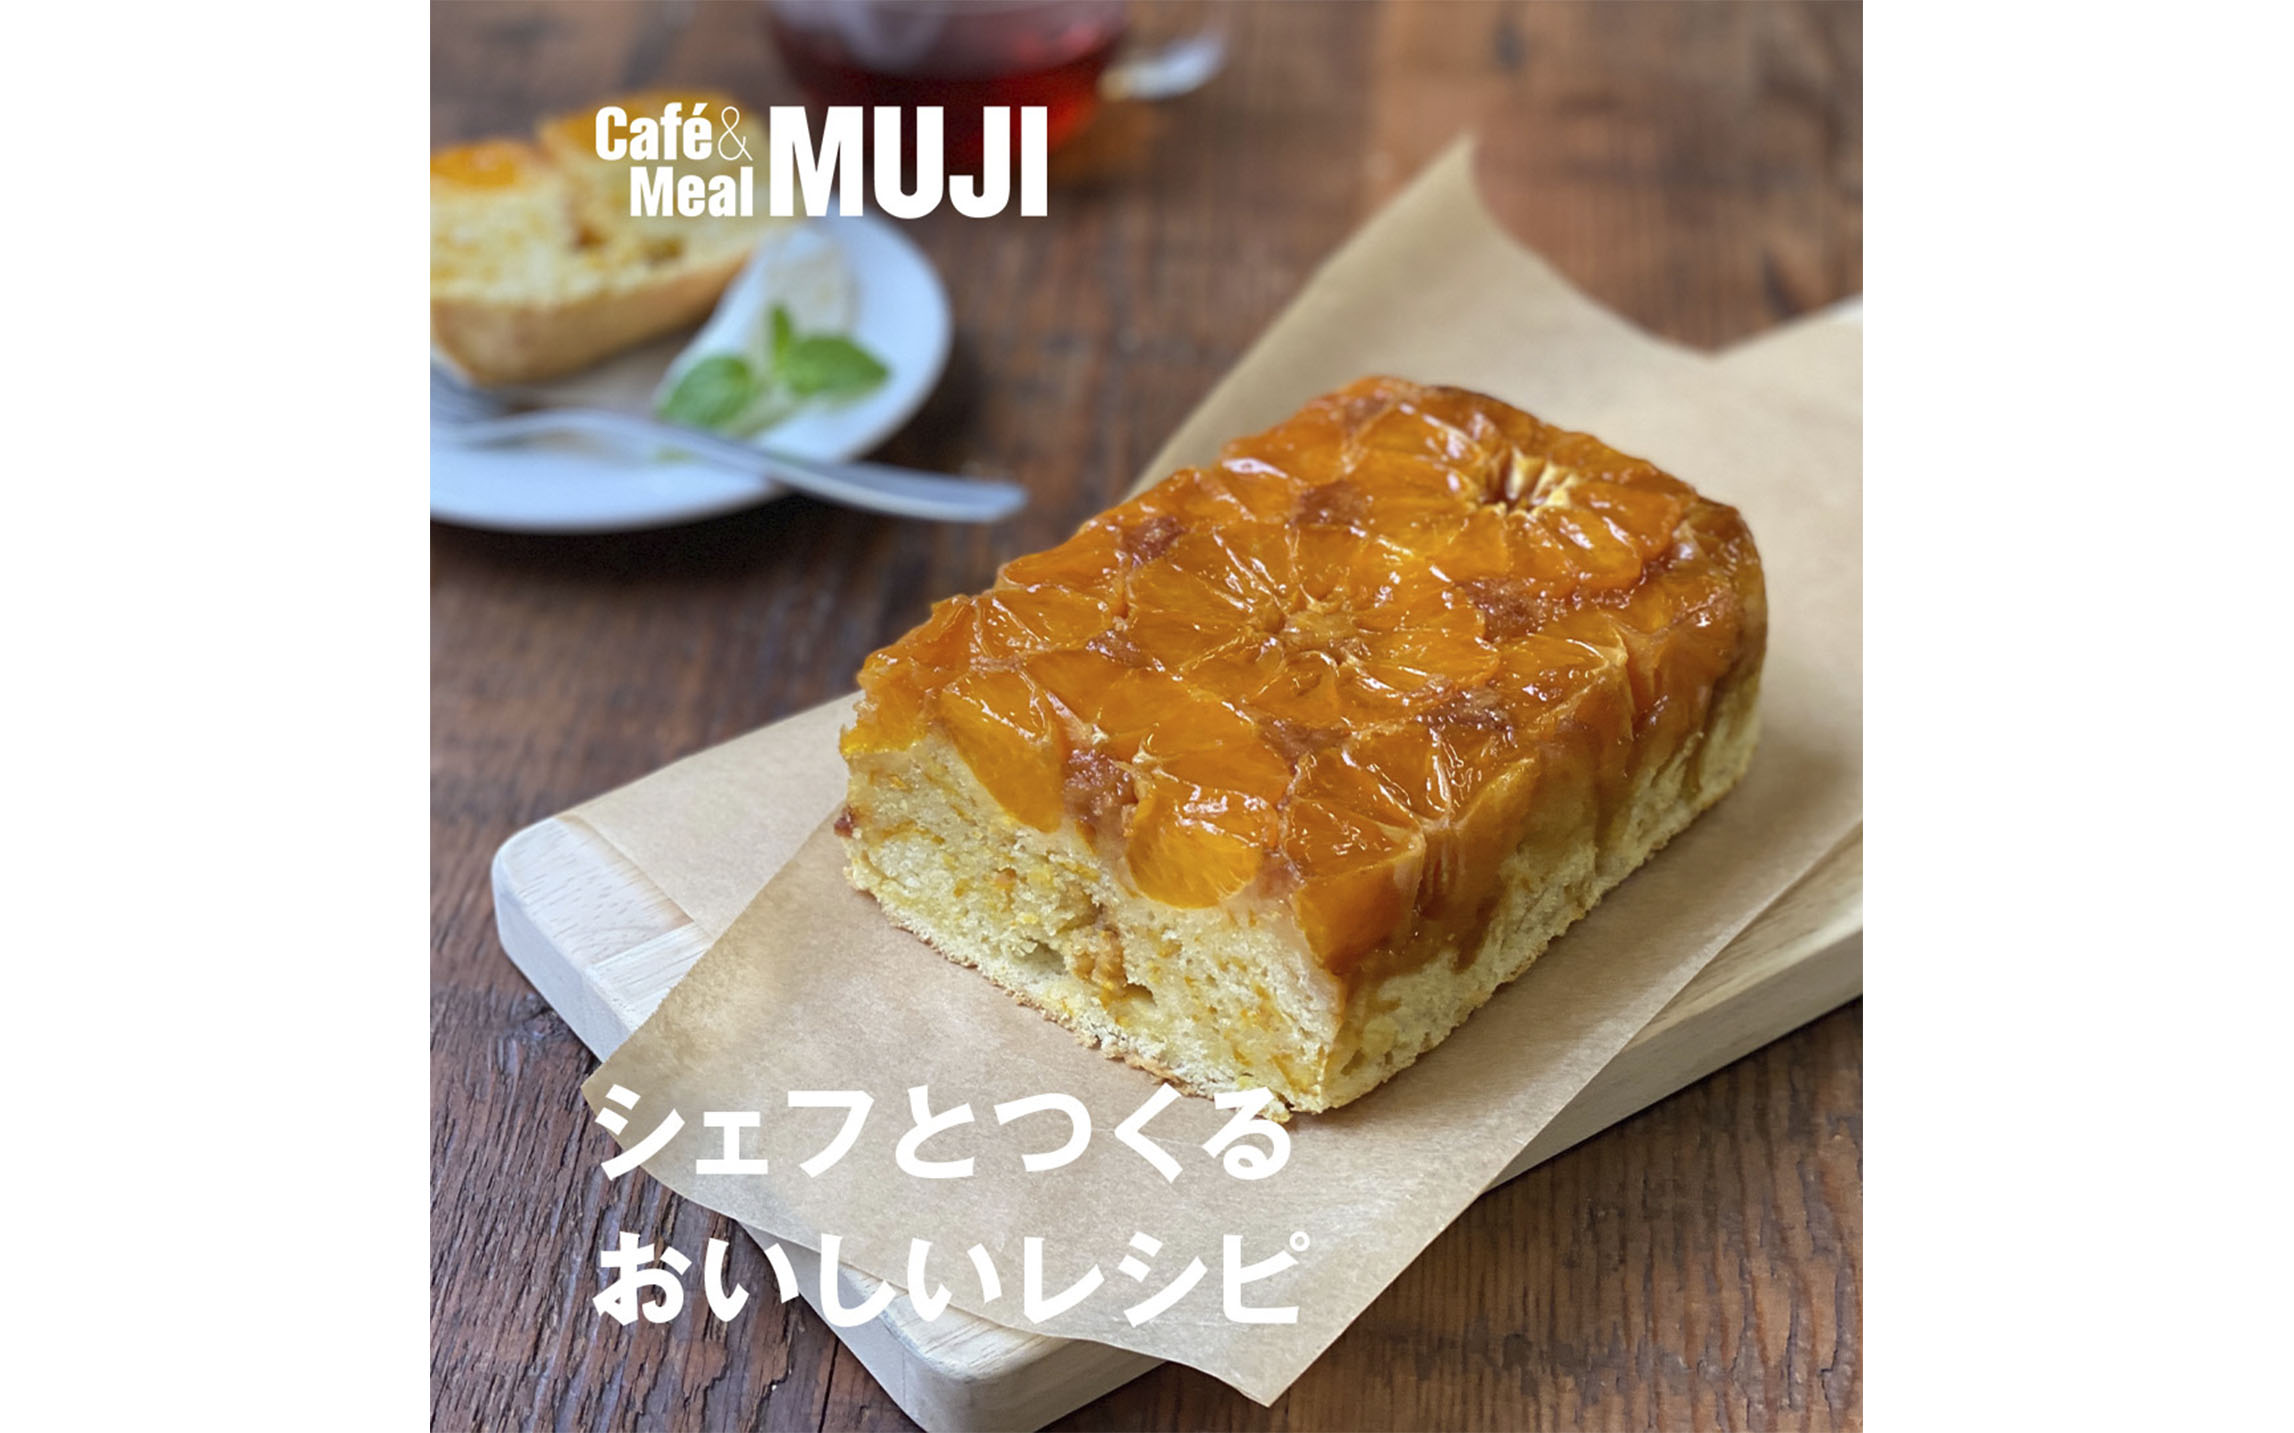 みかんのパウンドケーキ Blog Cafe Meal Muji